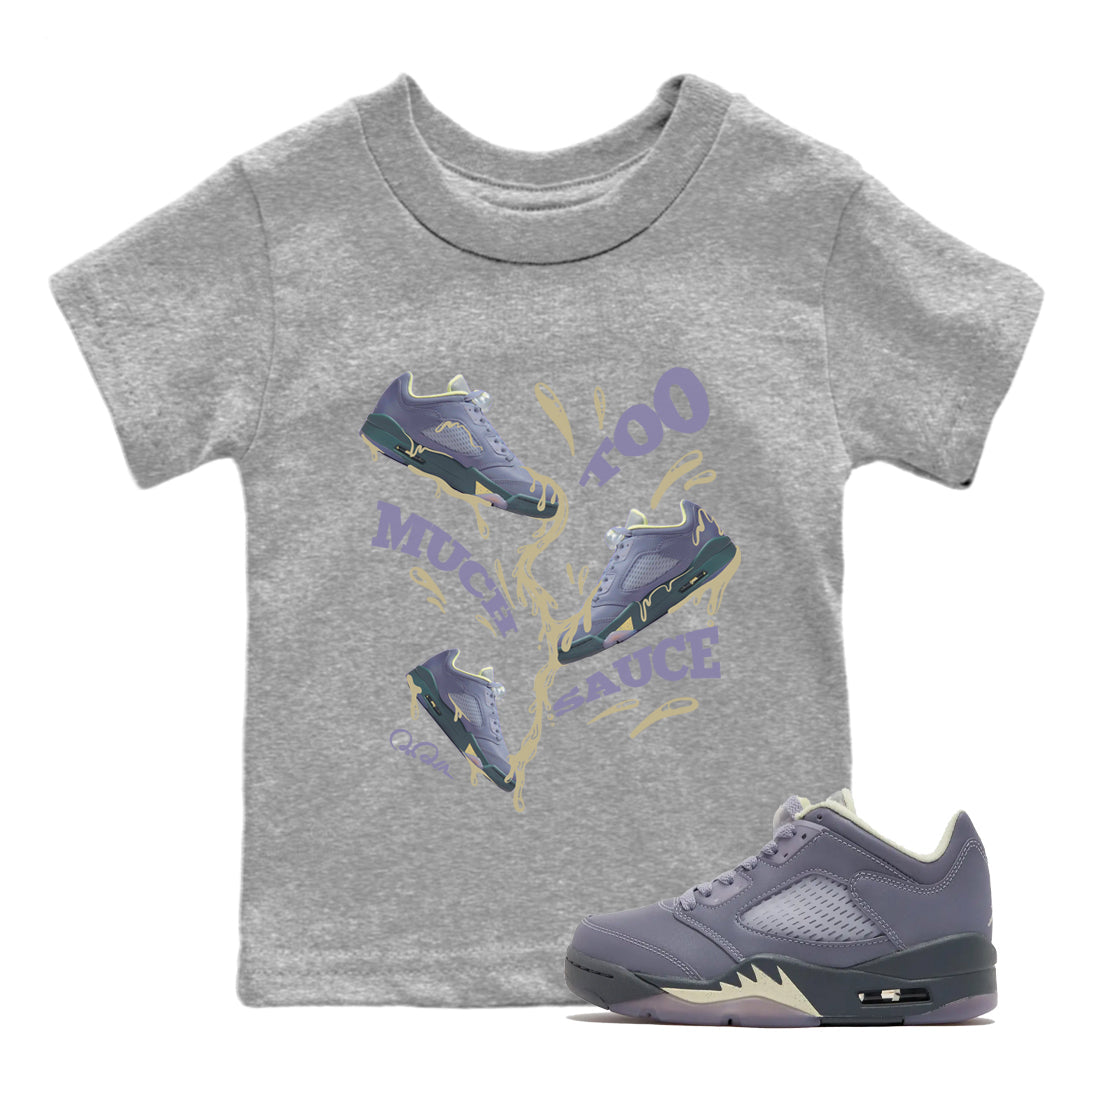 Air Jordan 5 Indigo Haze Sneaker Match Tees Too Much Sauce Sneaker Tees AJ5 Indigo Haze Sneaker Release Tees Kids Shirts Heather Grey 1